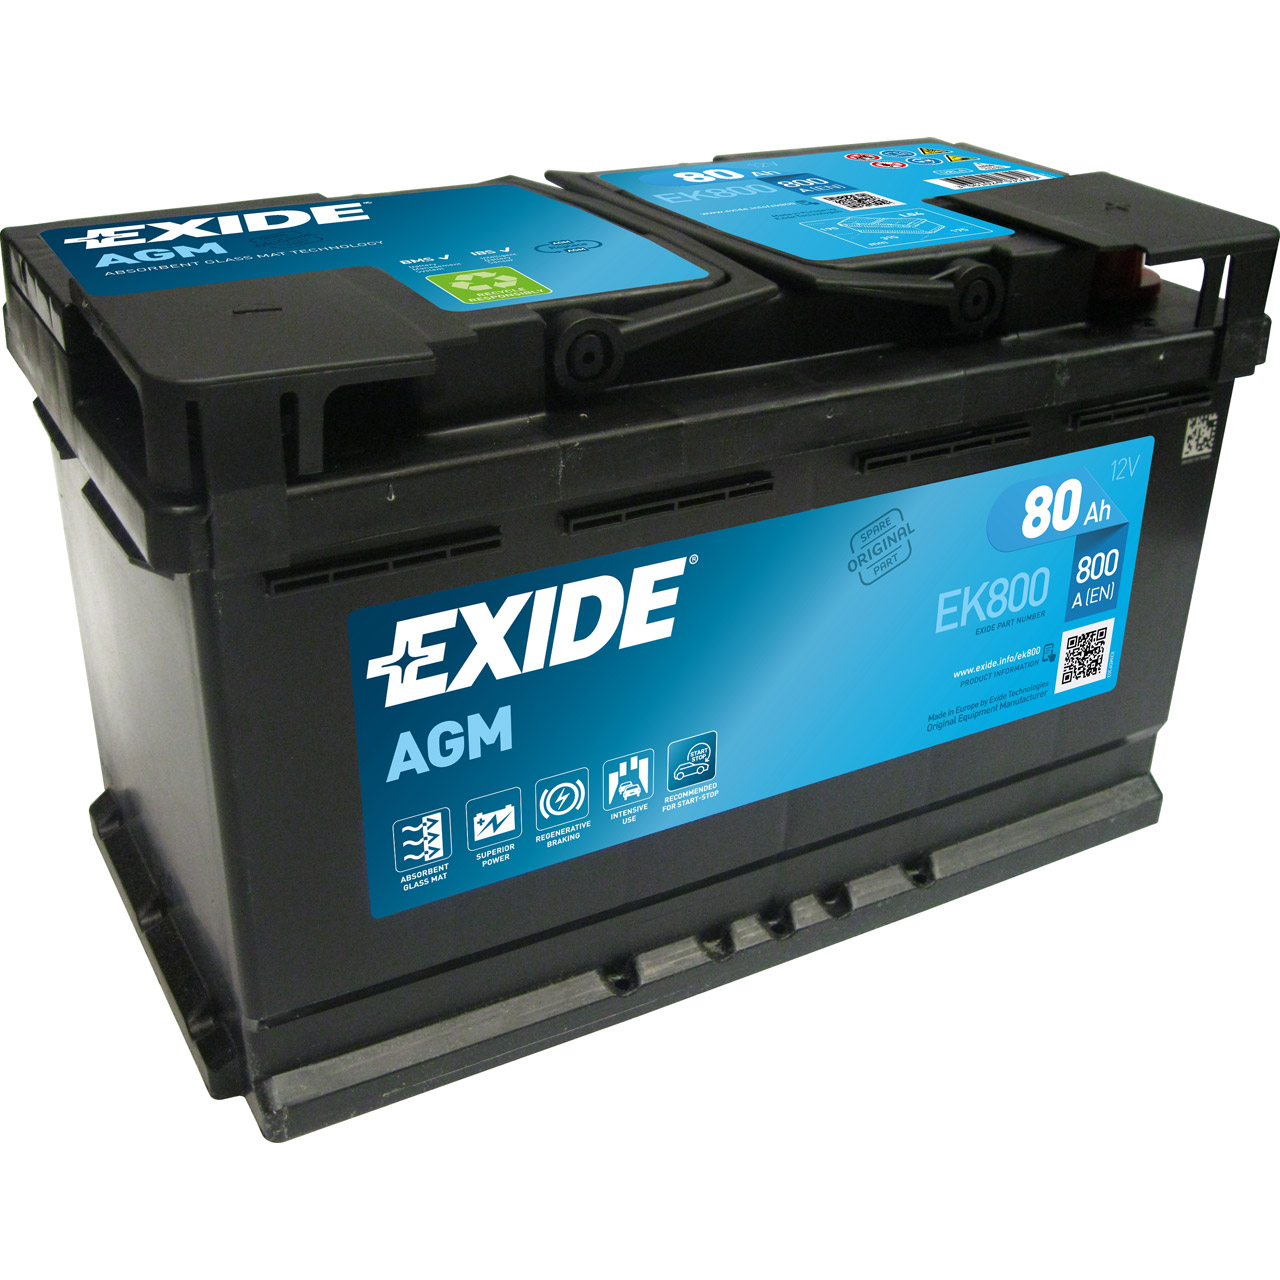 EXIDE EK800 AGM START-STOP Autobatterie Batterie Starterbatterie 12V 80Ah EN800A